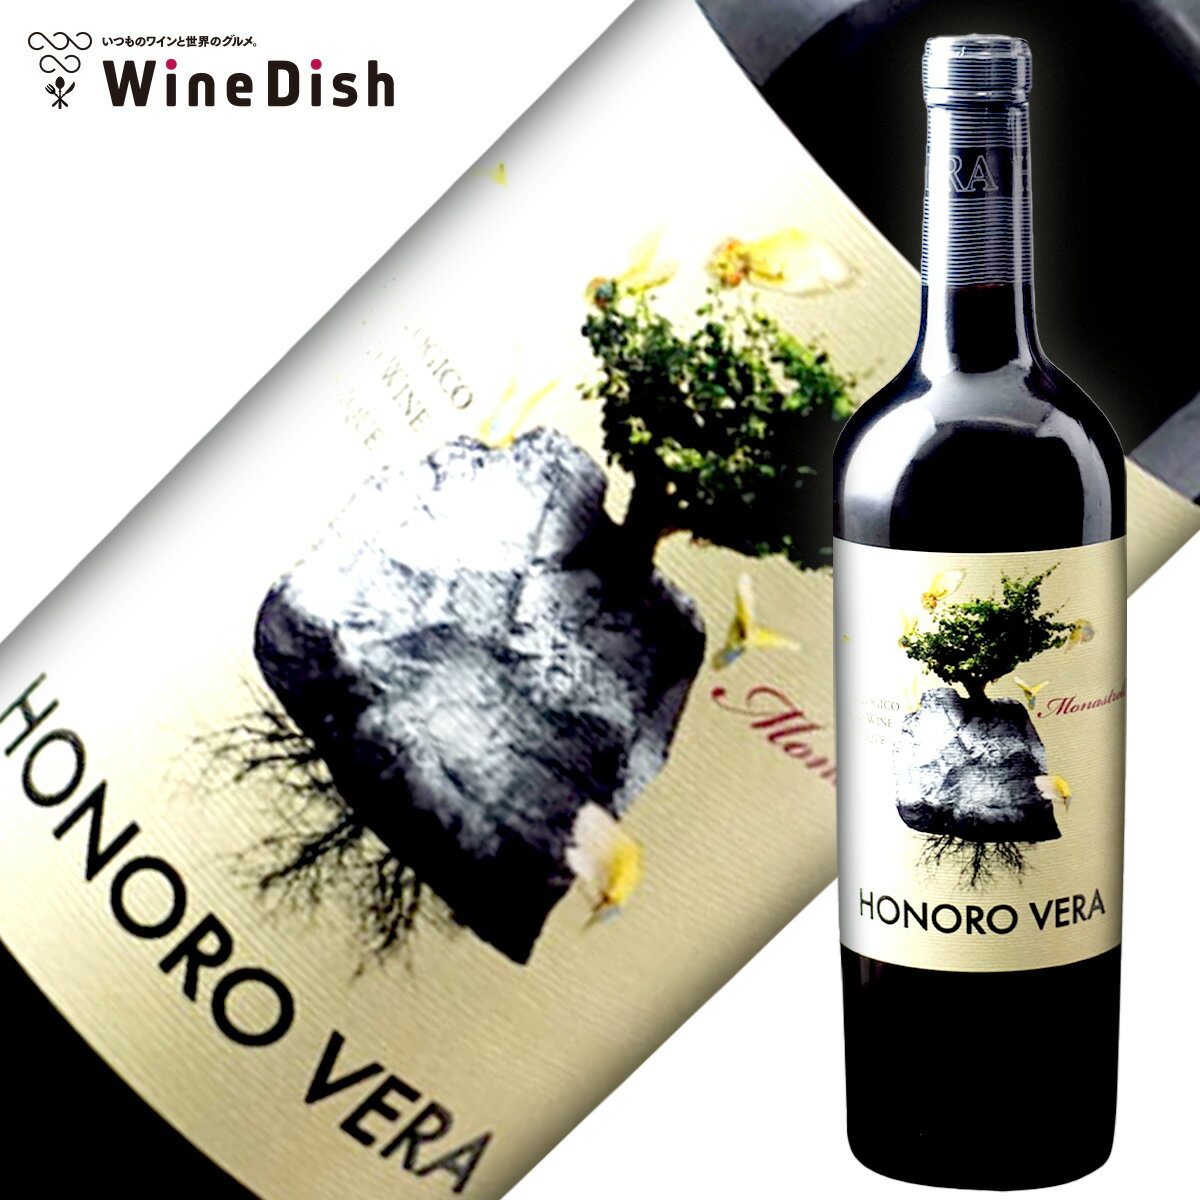 オノロ ベラ オーガニック 2021 ヒル・ファミリー・エステーツ 「 スペイン 赤ワイン フルボディ 750ml モナストレル 」 フミーリャ WineDish ワインディッシュ Honoro Vera Organic